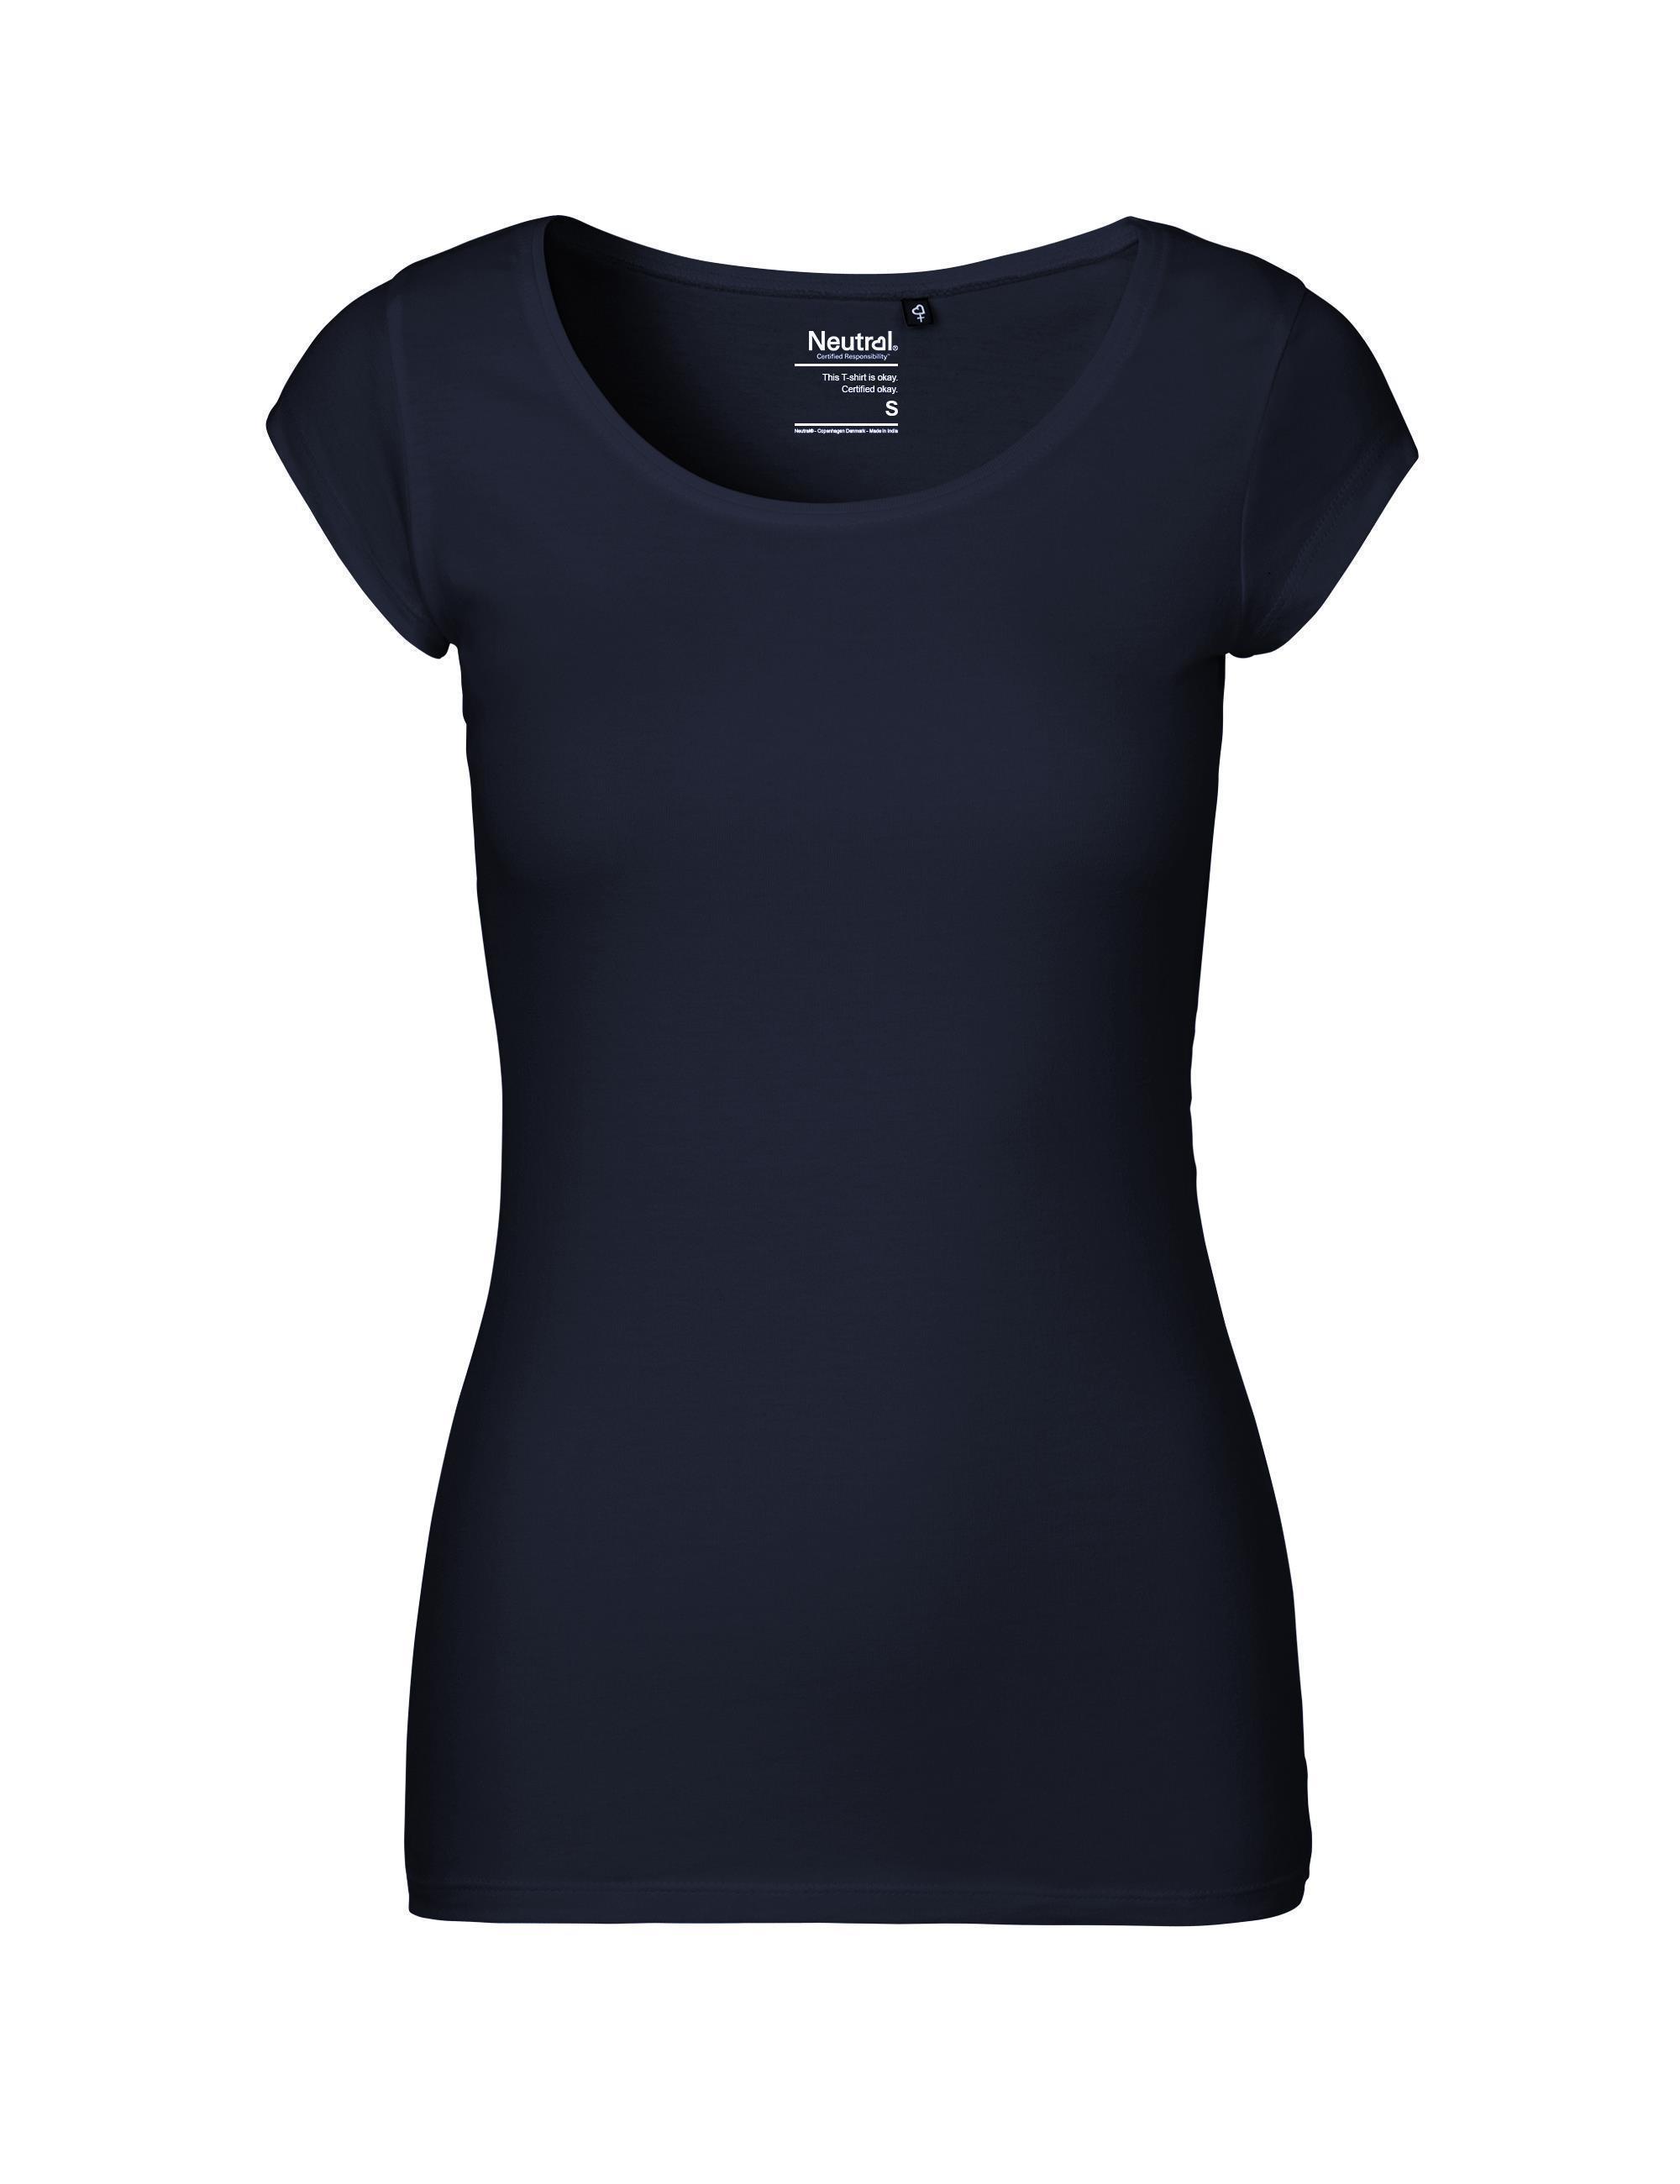 Organic Fairtrade Slimfit-Damen T-Shirt 155 g/m² Neutral® Navy M